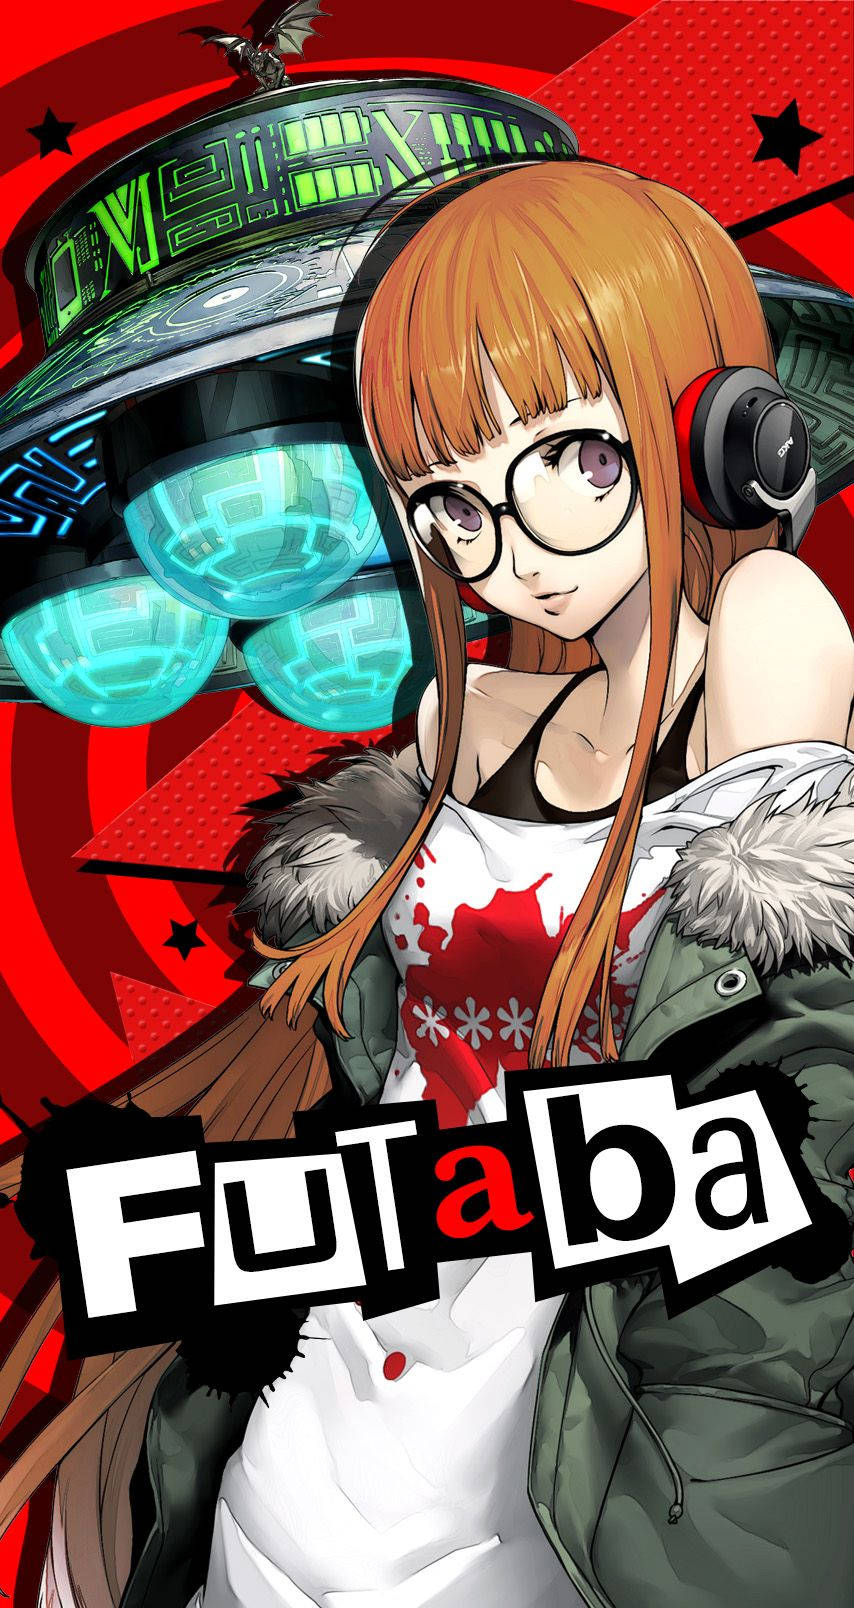 Persona Futuba Anime Cover Wallpaper